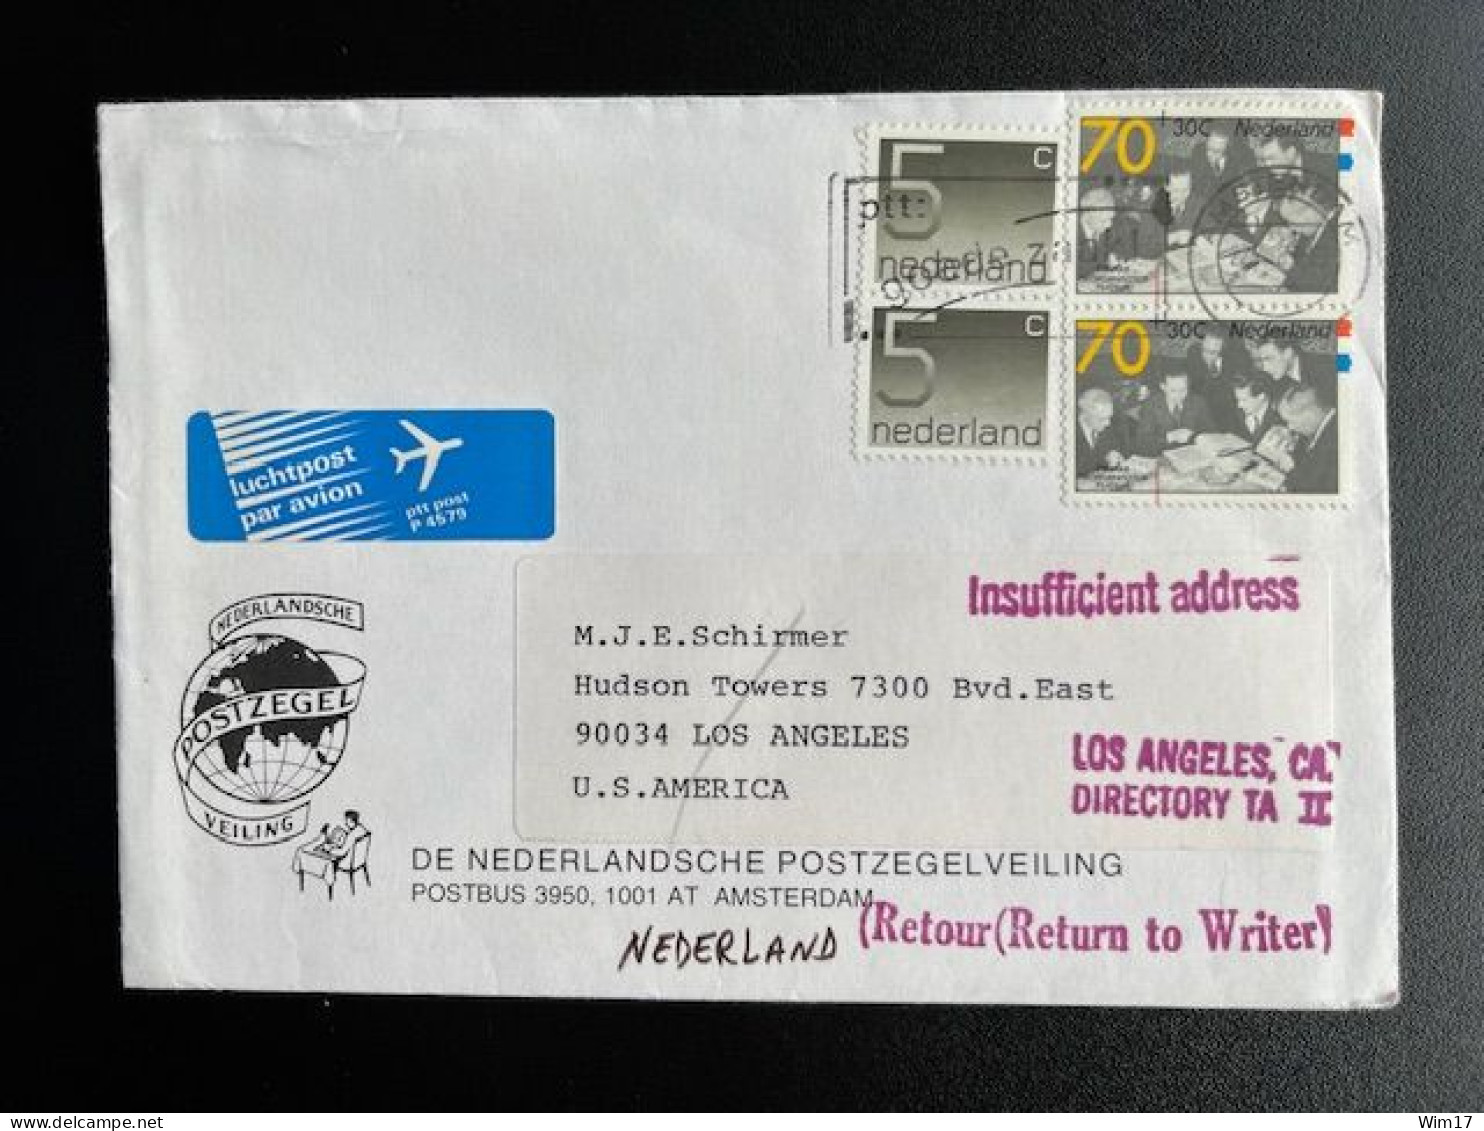 NETHERLANDS 1989 LETTER AMSTERDAM TO LOS ANGELES USA 22-08-1989 NEDERLAND RETURN TO SENDER POSTAL REMARKS - Briefe U. Dokumente